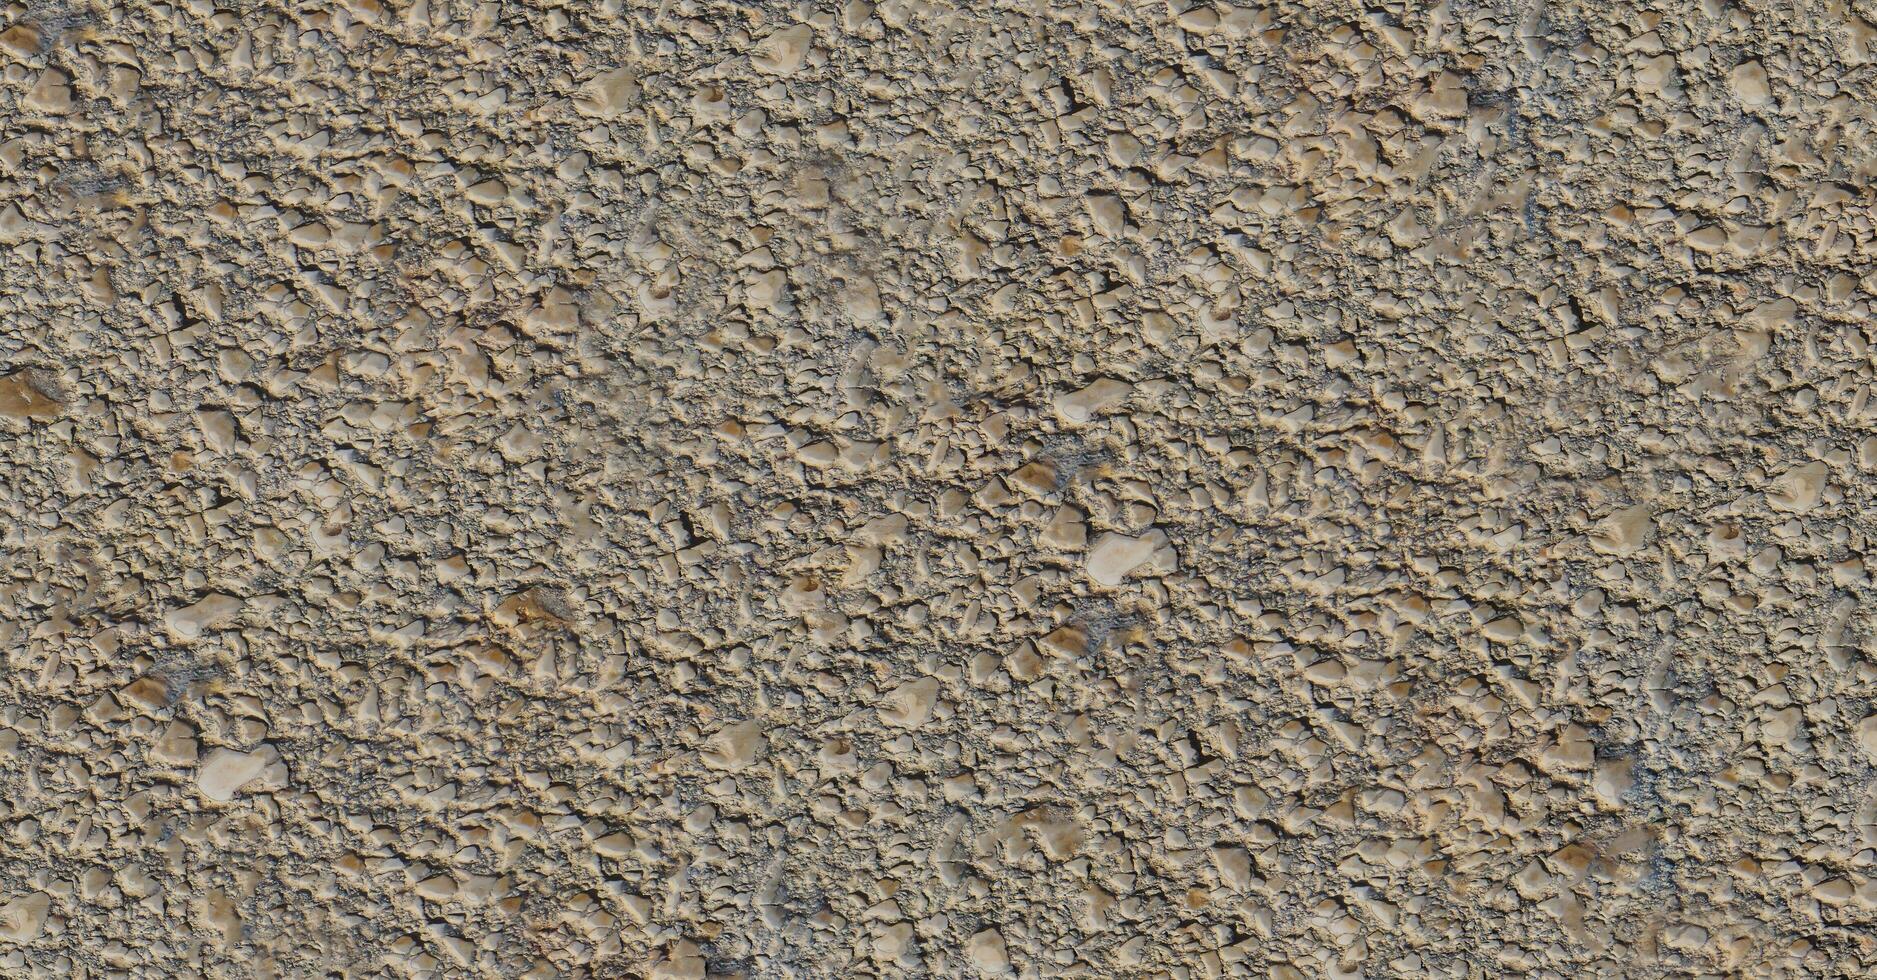 estrada superfície bem calçada portuguesa fundo rude cimento parede asfalto cascalho superfície pedra cascalho textura 3d ilustração foto